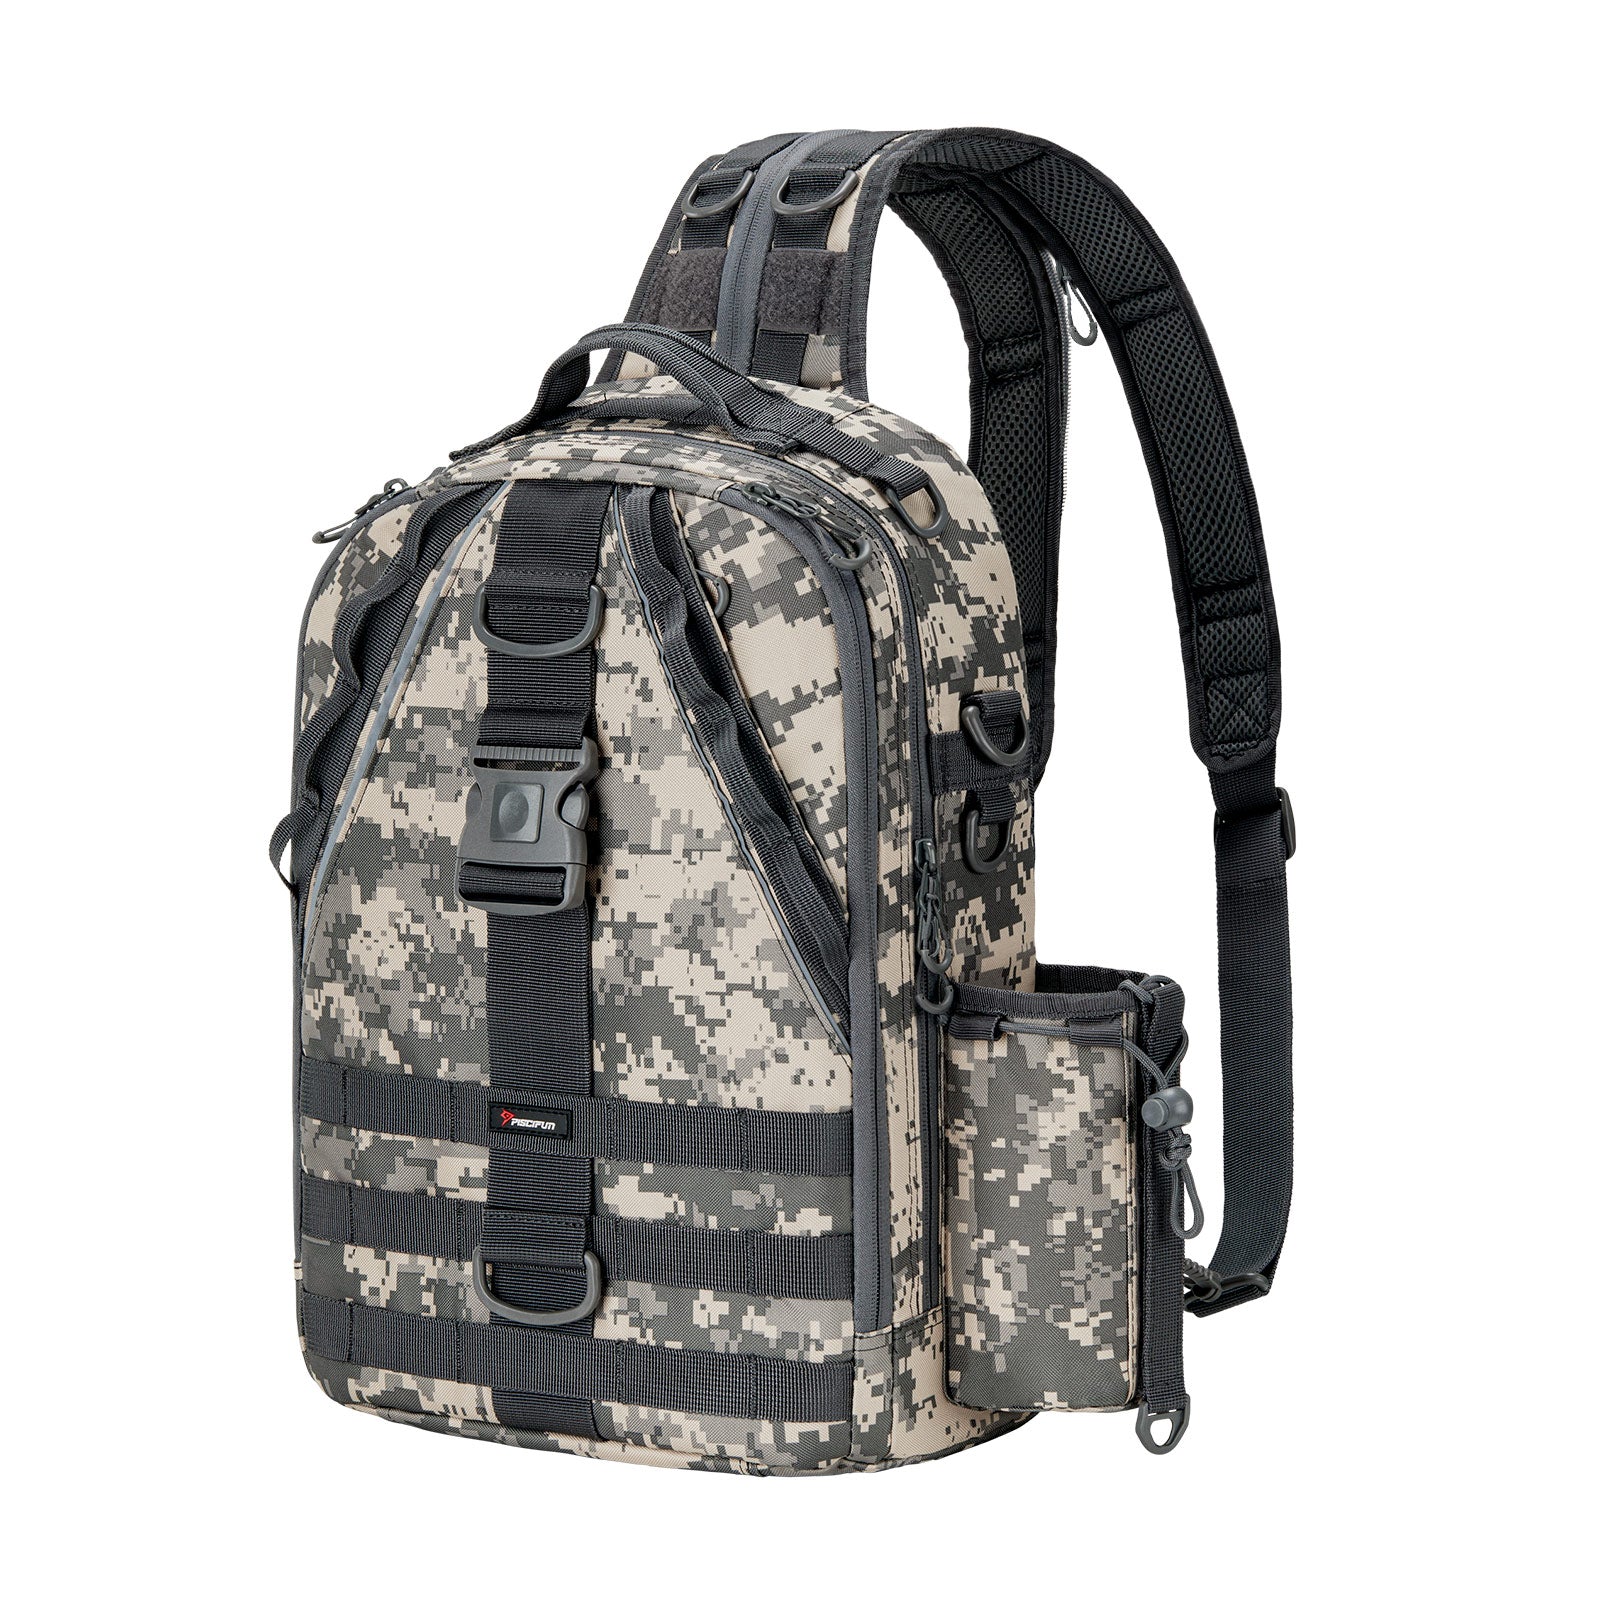 Ghosthorn Fishing Tackle Backpack Storage Bag - Outdoor Shoulder Backpack - Fishing  Gear Bag Large Black